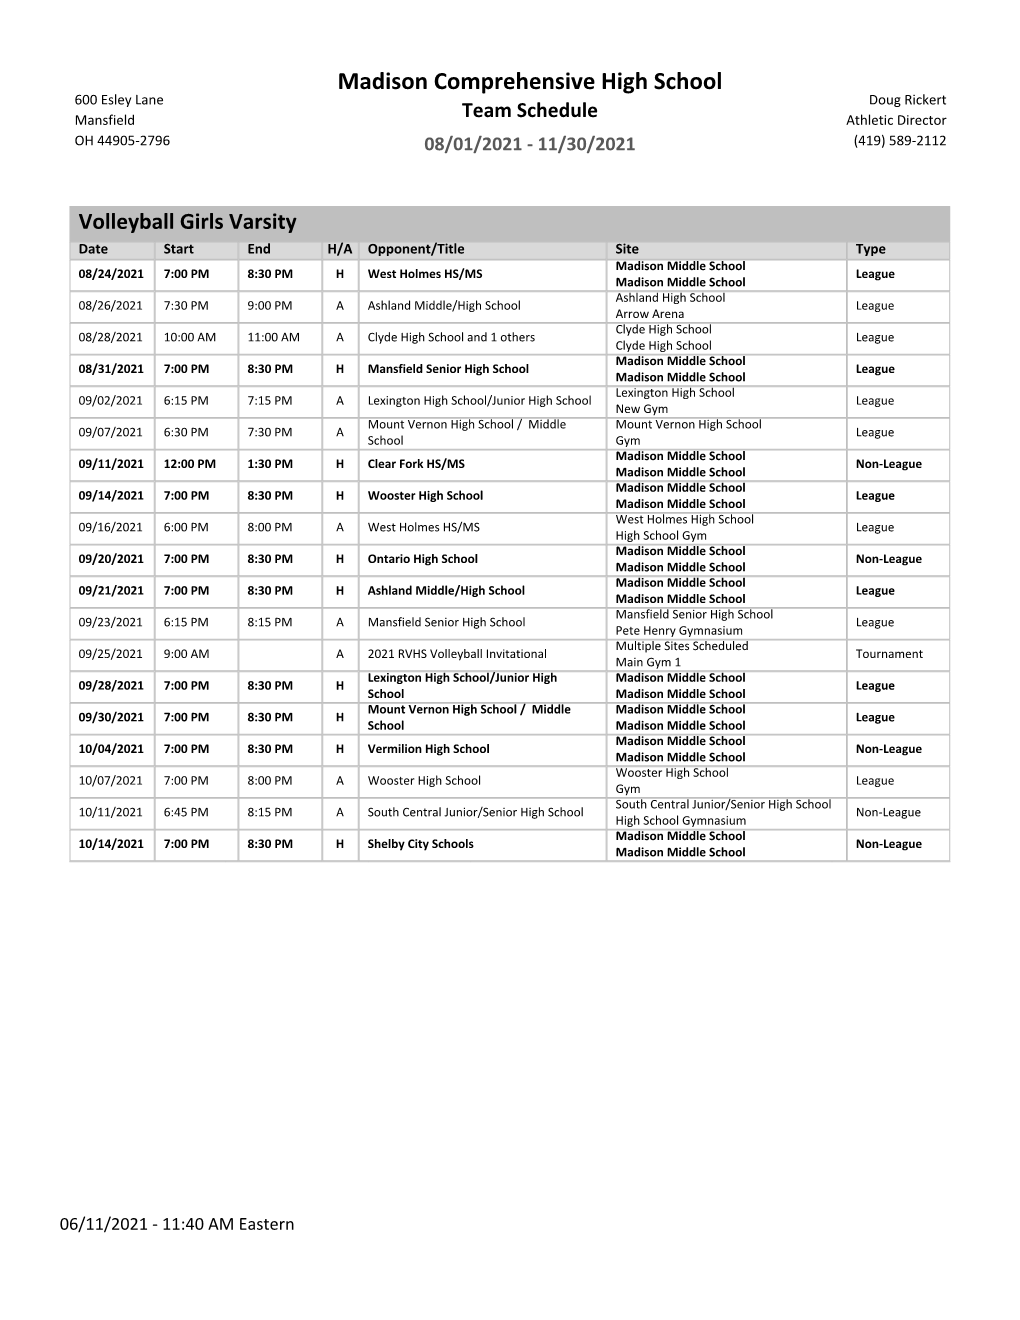 2021 Varsity Volleyball Schedule